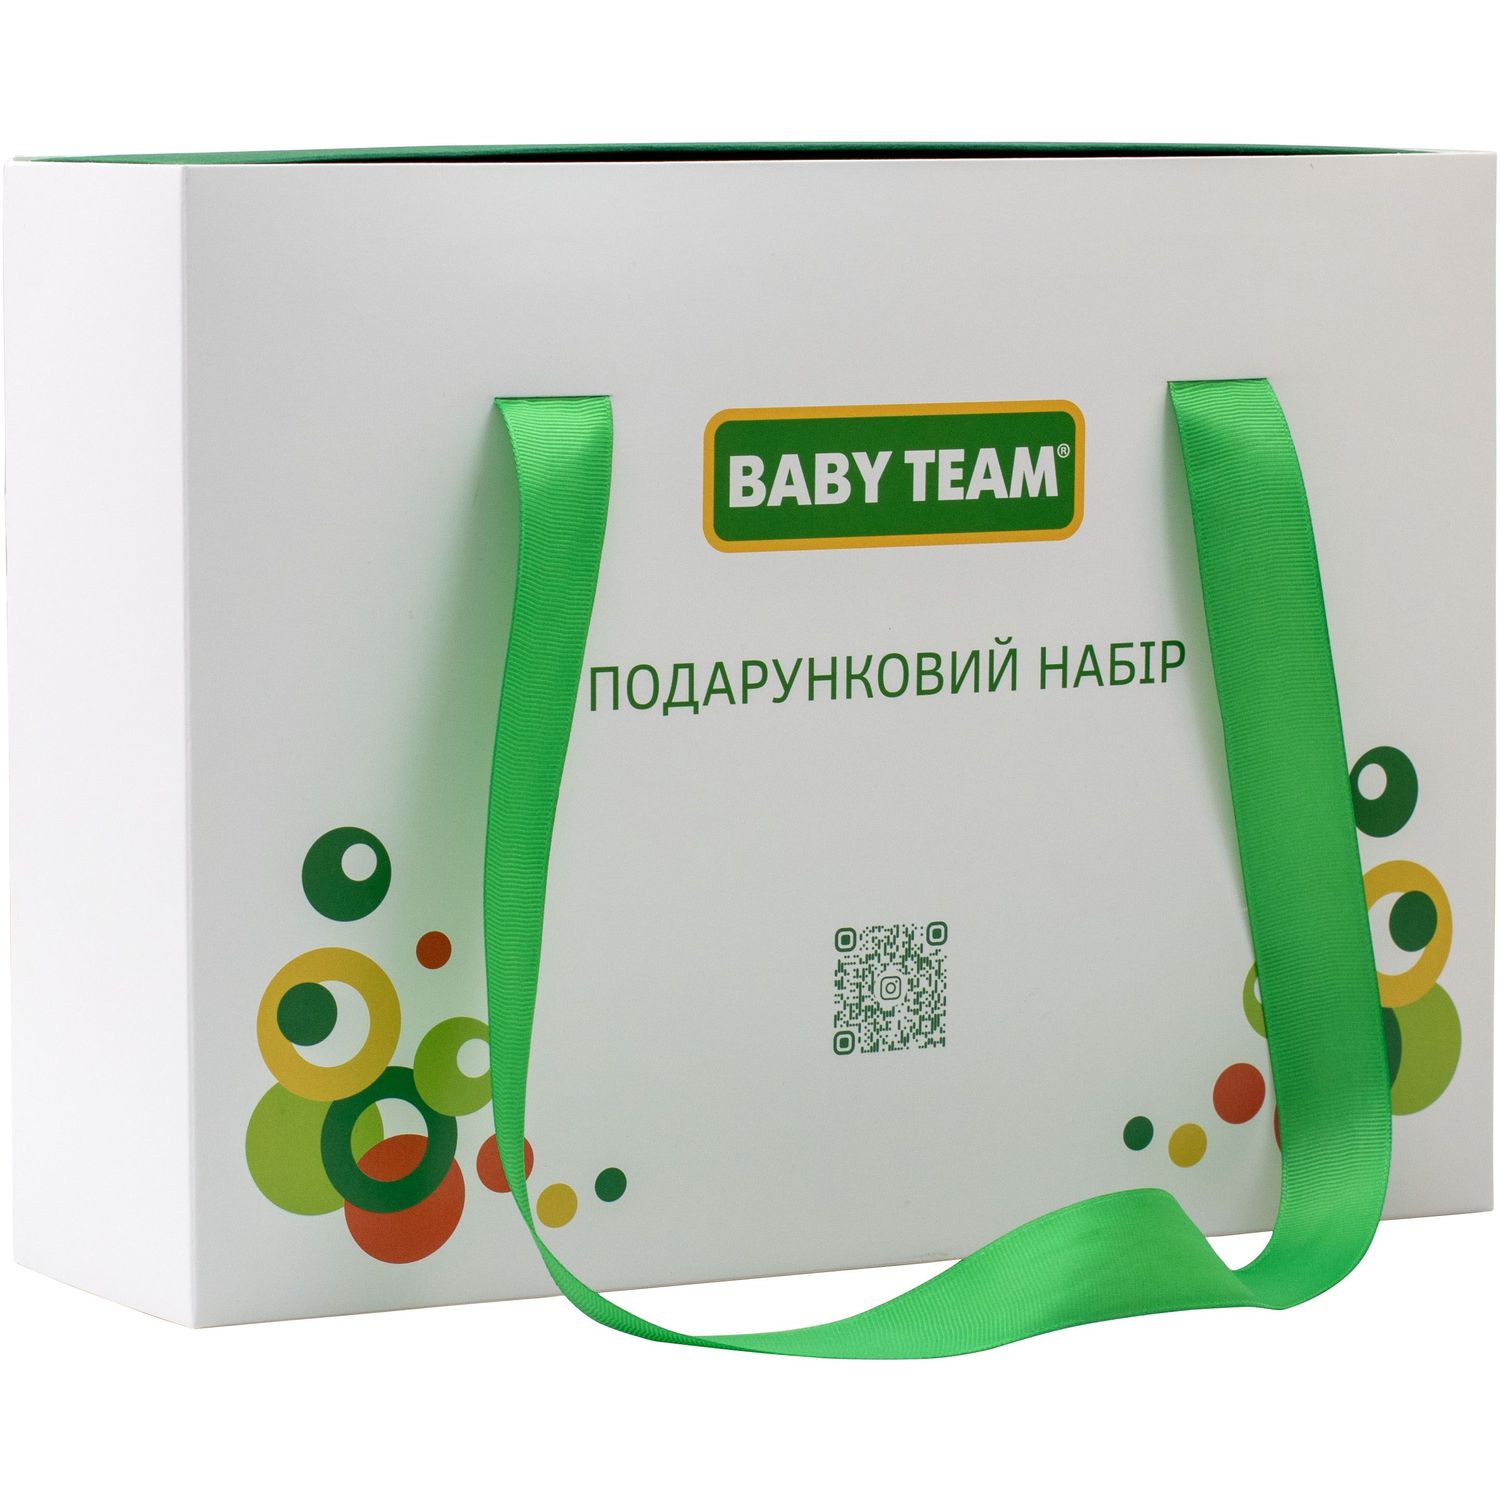 Подарочный набор Baby team (0720) - фото 2